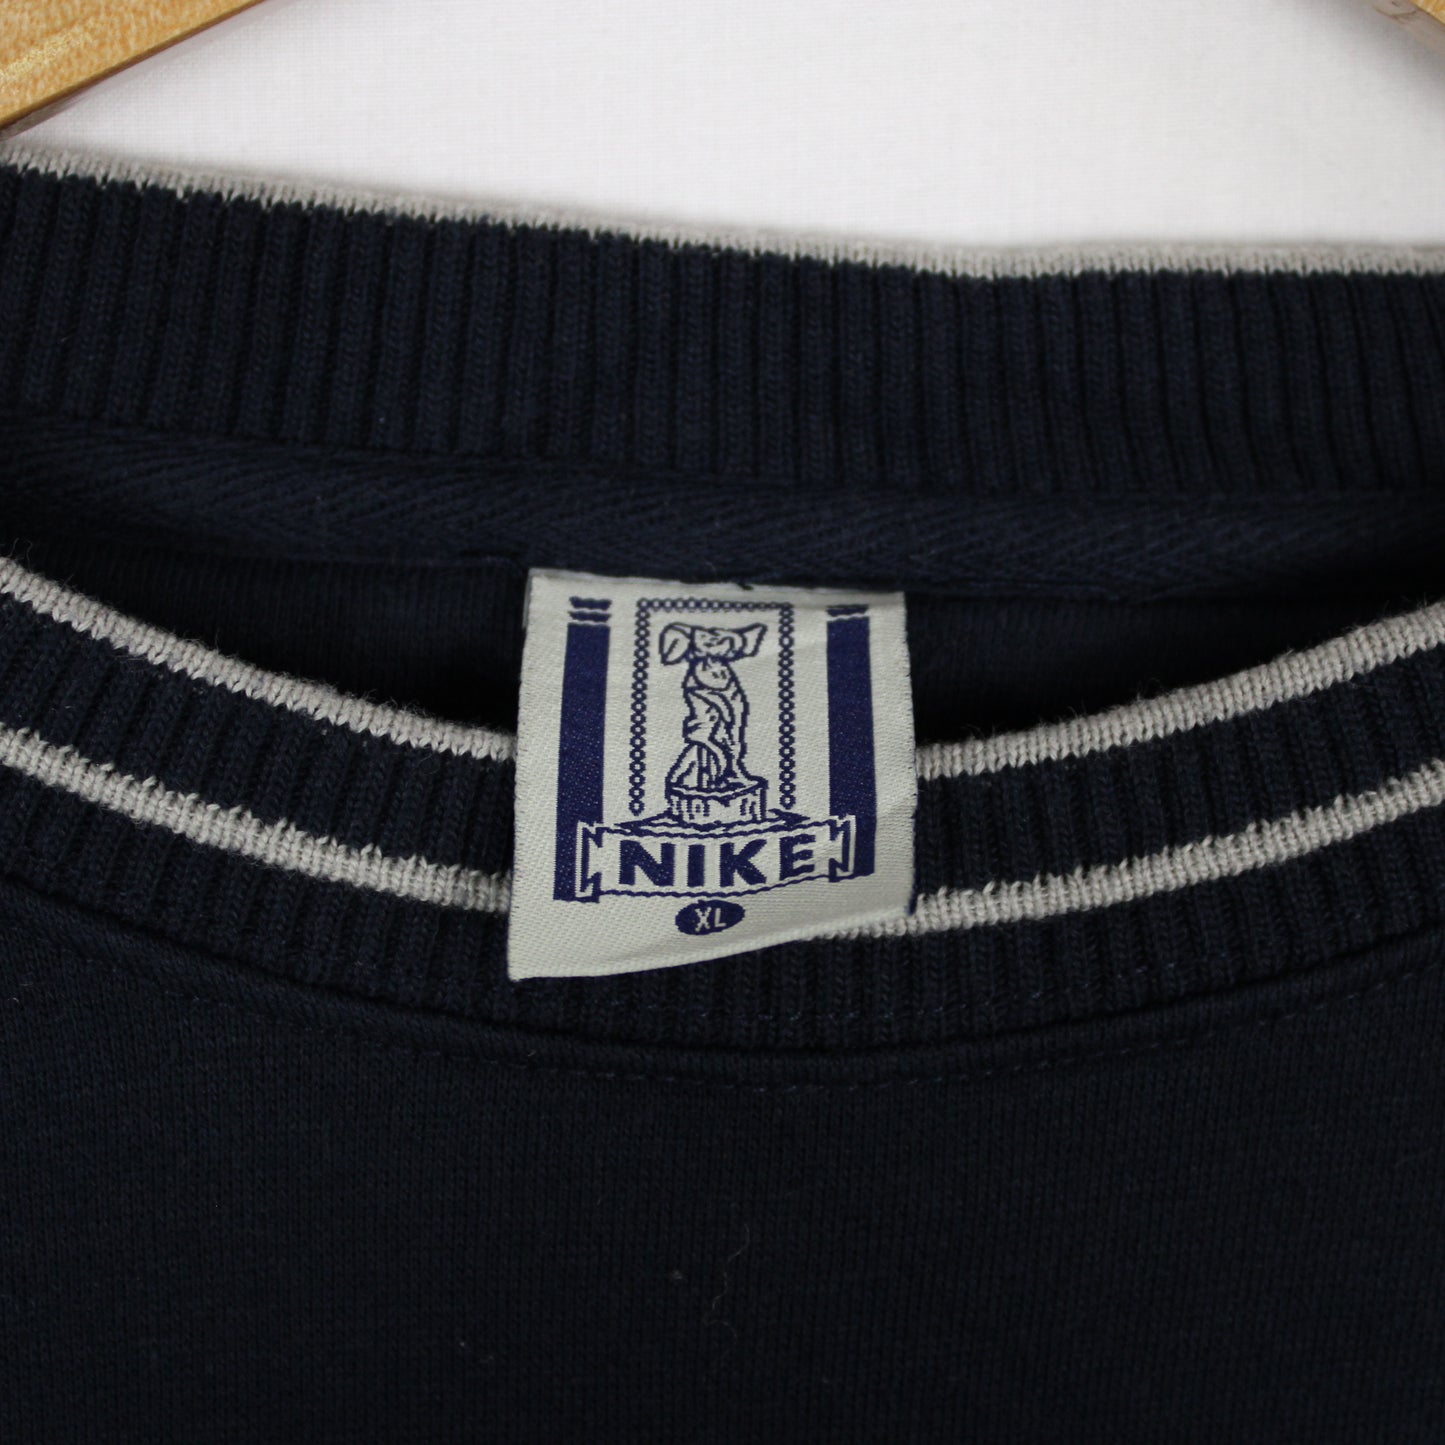 Vintage Nike Embroidered Sweatshirt - S